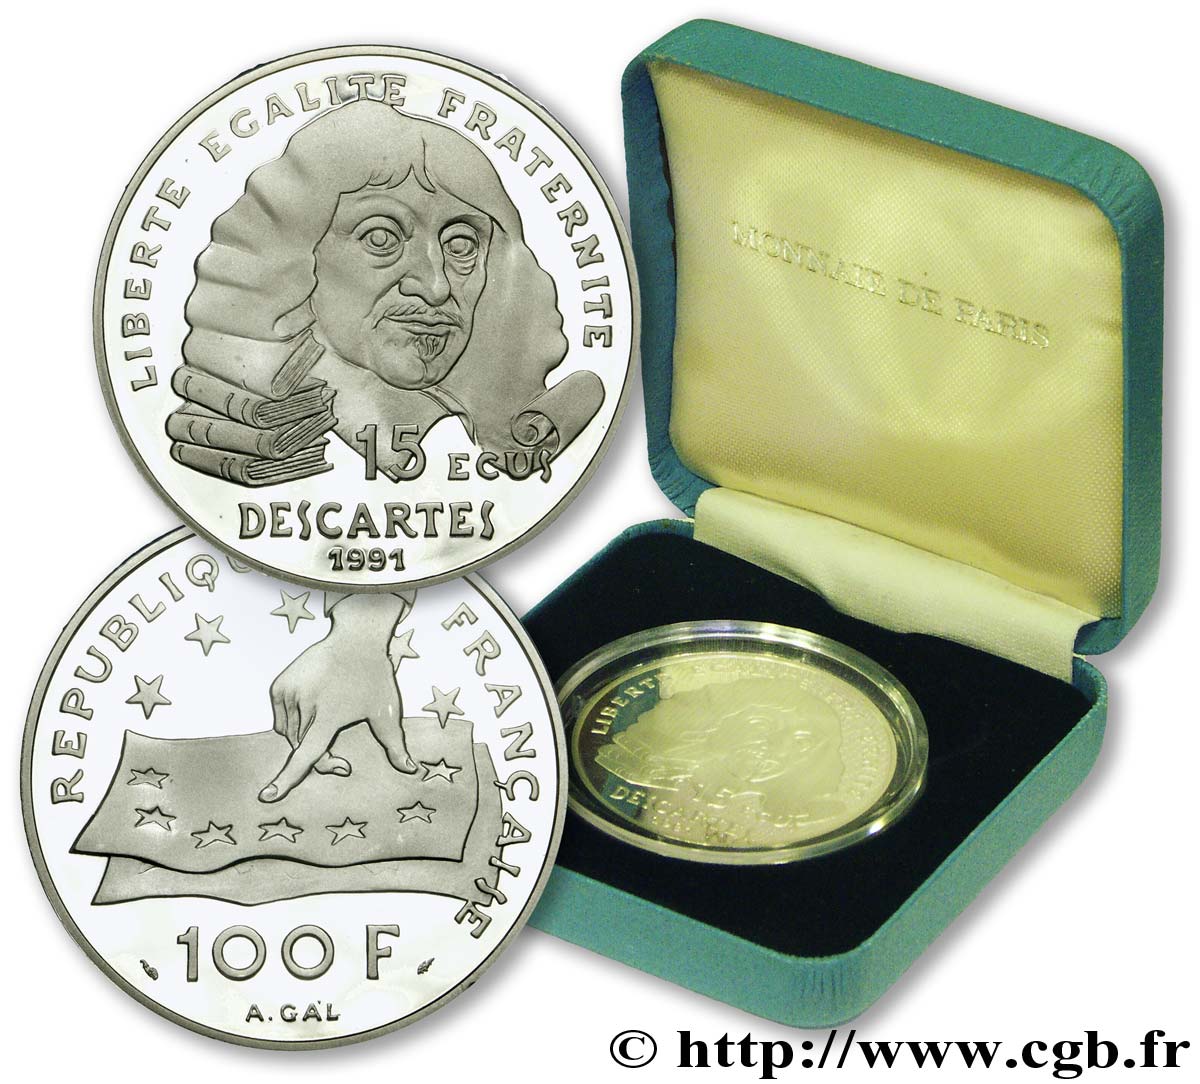 Belle Epreuve 15 écus / 100 francs - Descartes 1991  F.2001 01 MS 